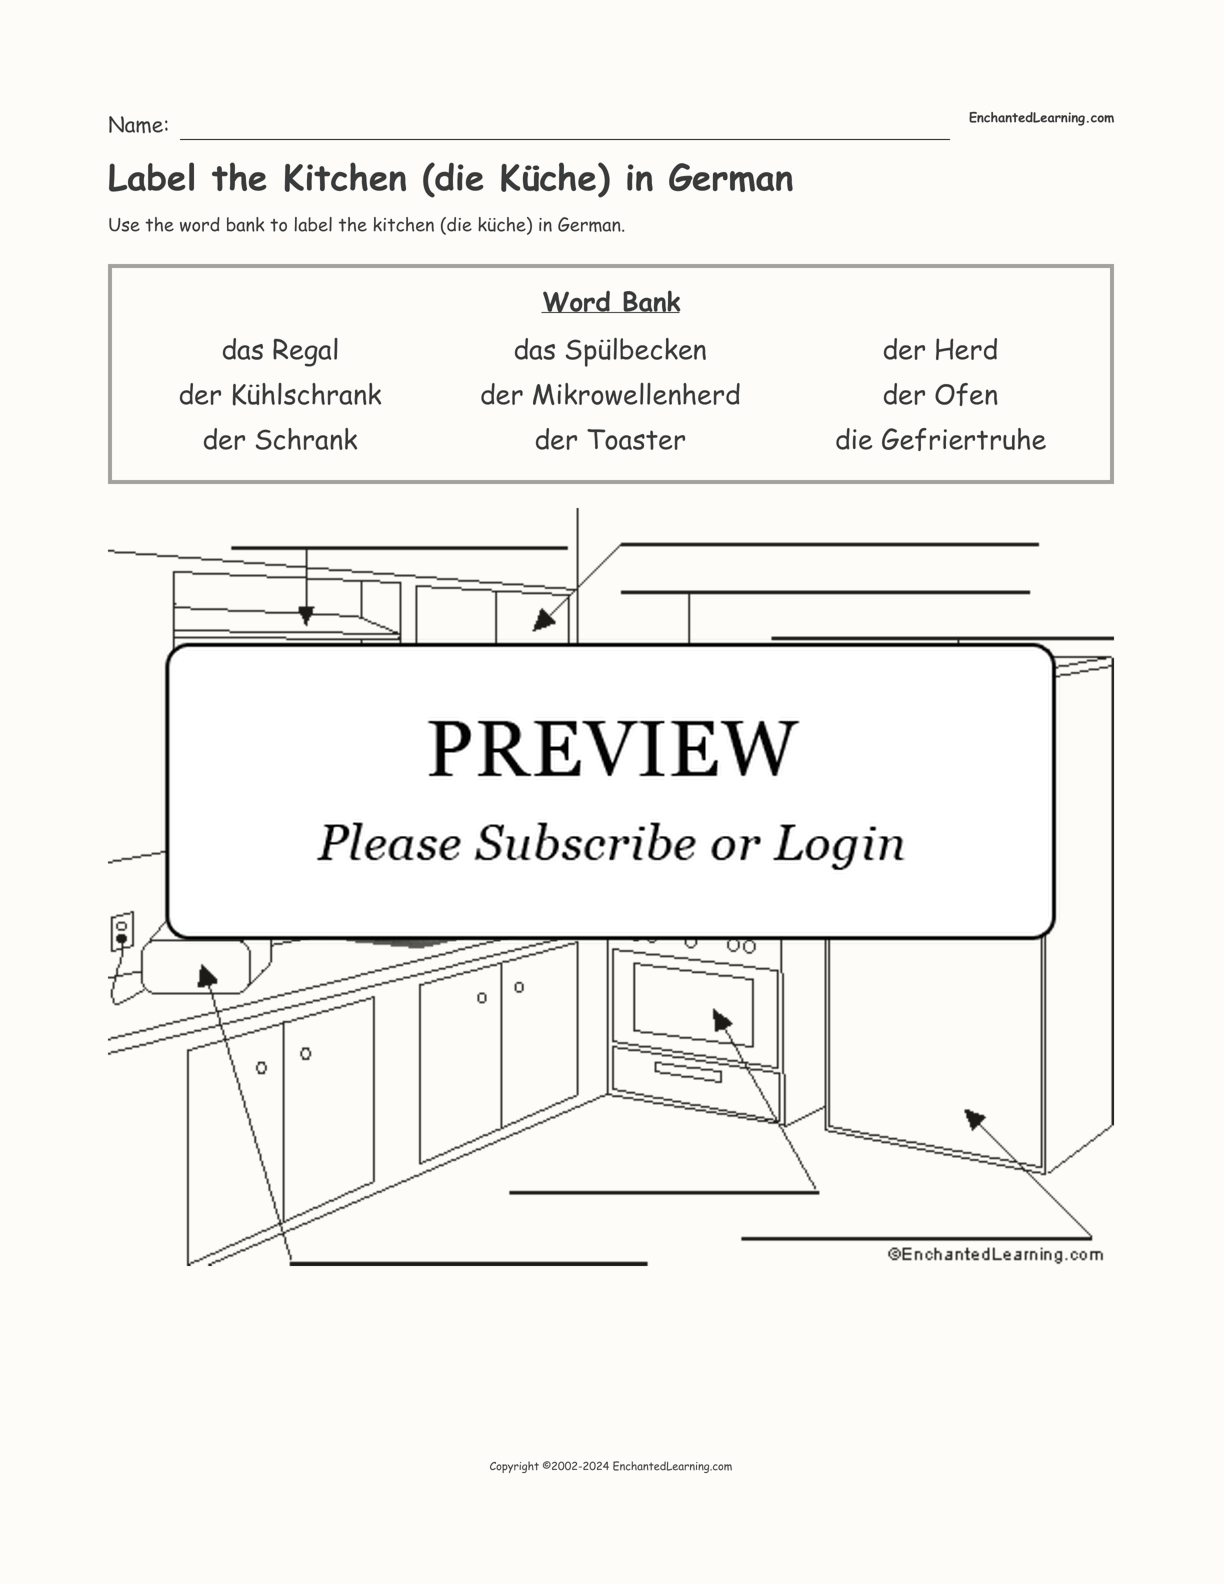 Label the Kitchen (die Küche) in German interactive worksheet page 1